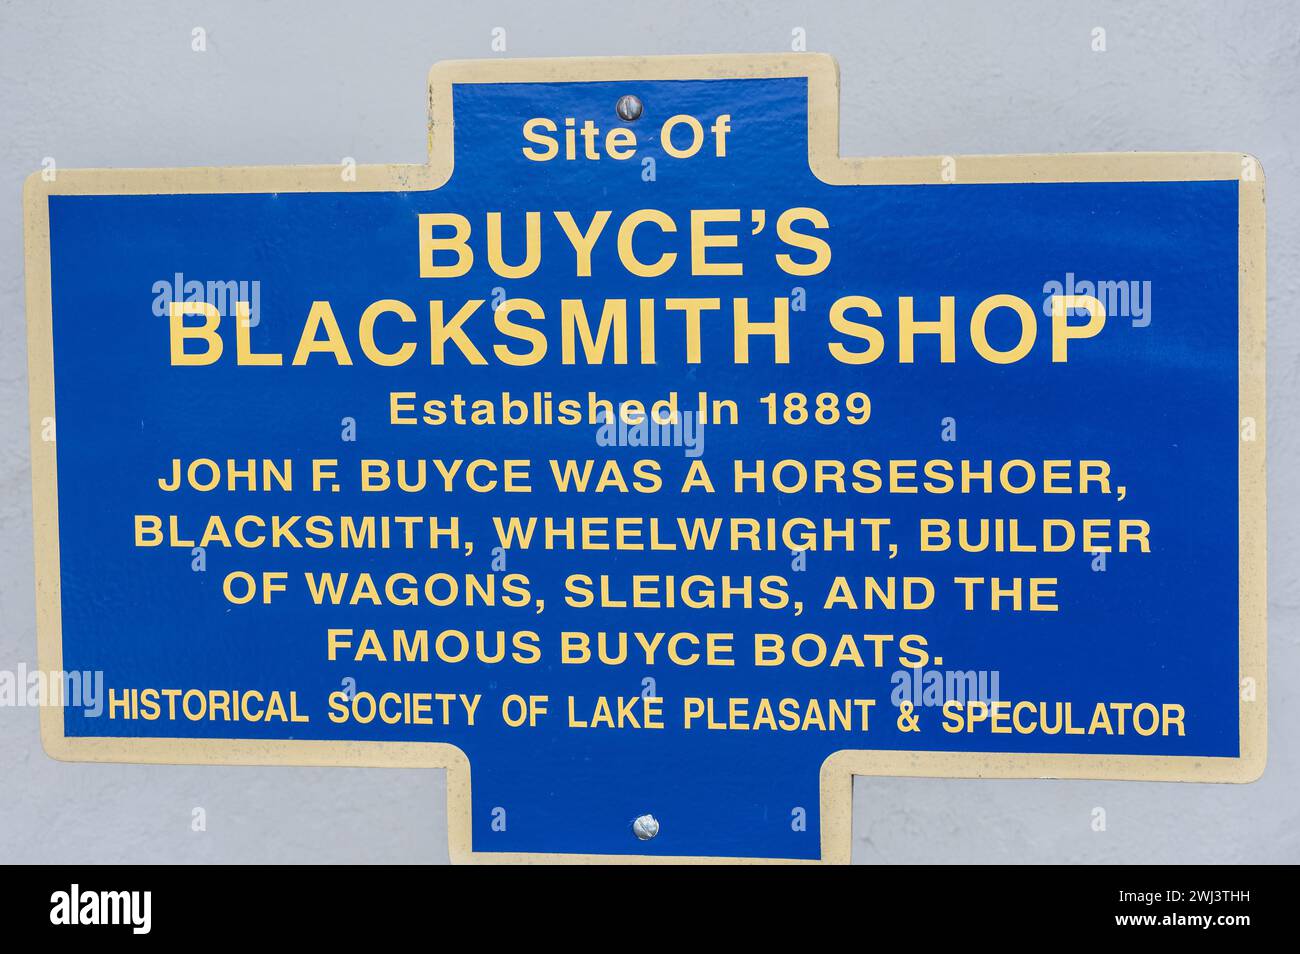 Ein Spekulationsschild am ehemaligen Standort von Buyce's Blacksmith Shop, das seine Tätigkeit als Hufeisen, Schmied und Bauer von Fahrzeugen aus der Zeit beschreibt Stockfoto